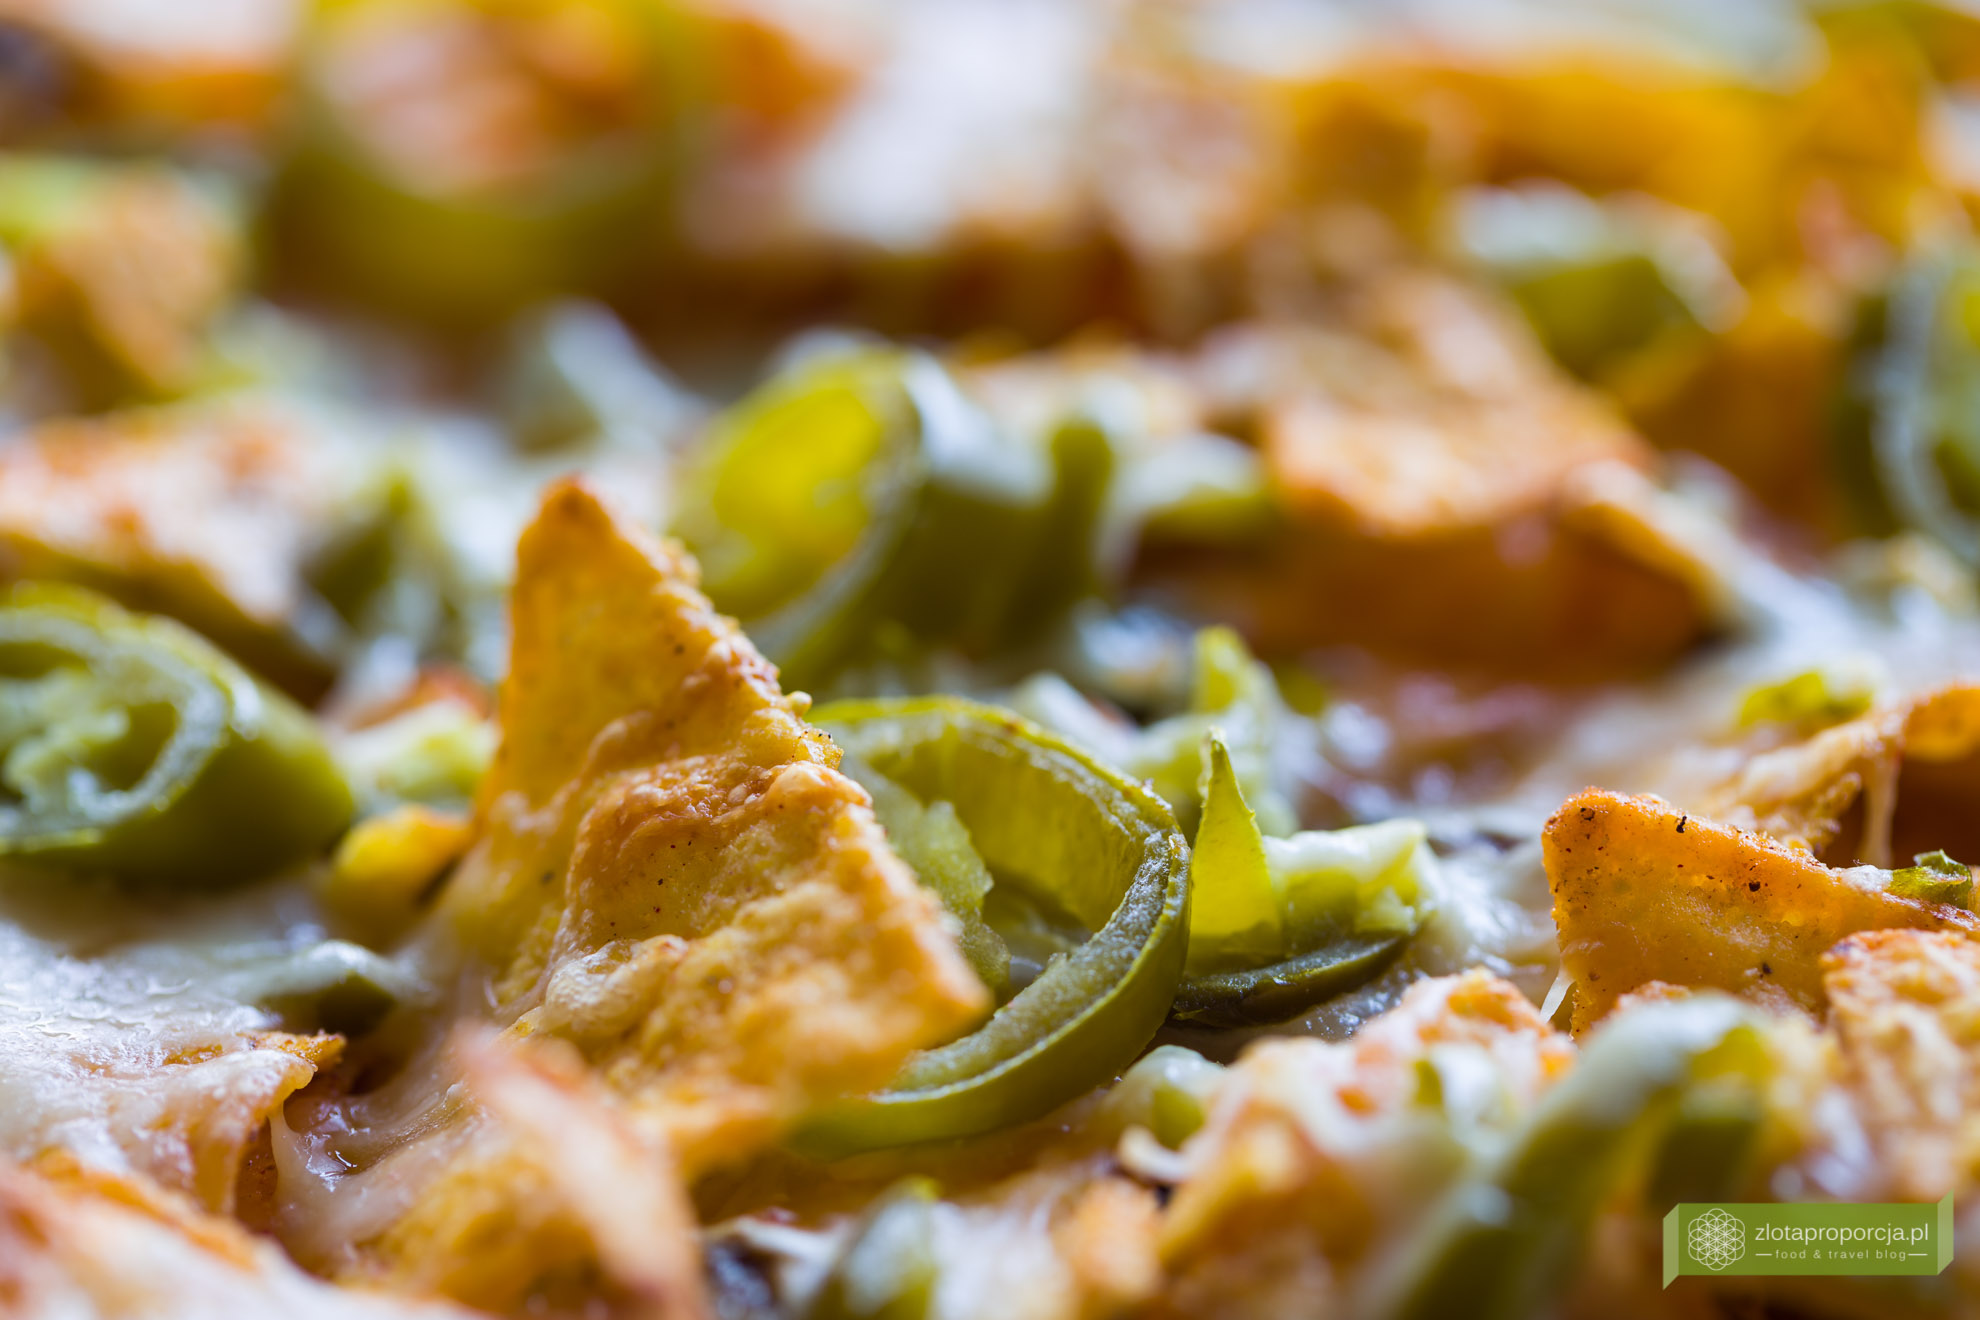 nachosy zapiekane z serem i papryczkami jalapeno, kuchnia meksykańska, nachos, zapiekane nachosy